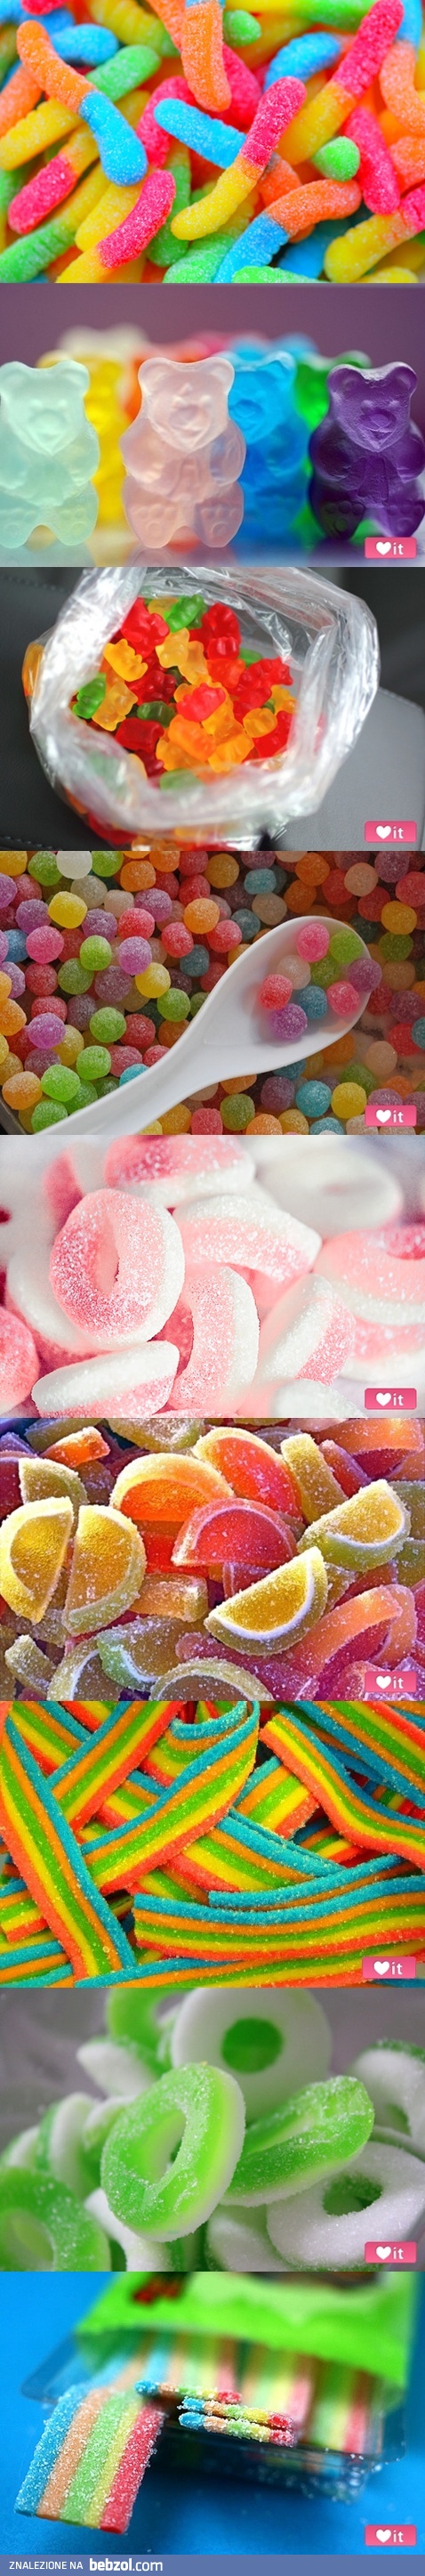 Wolisz słodkie czy kwaśne?